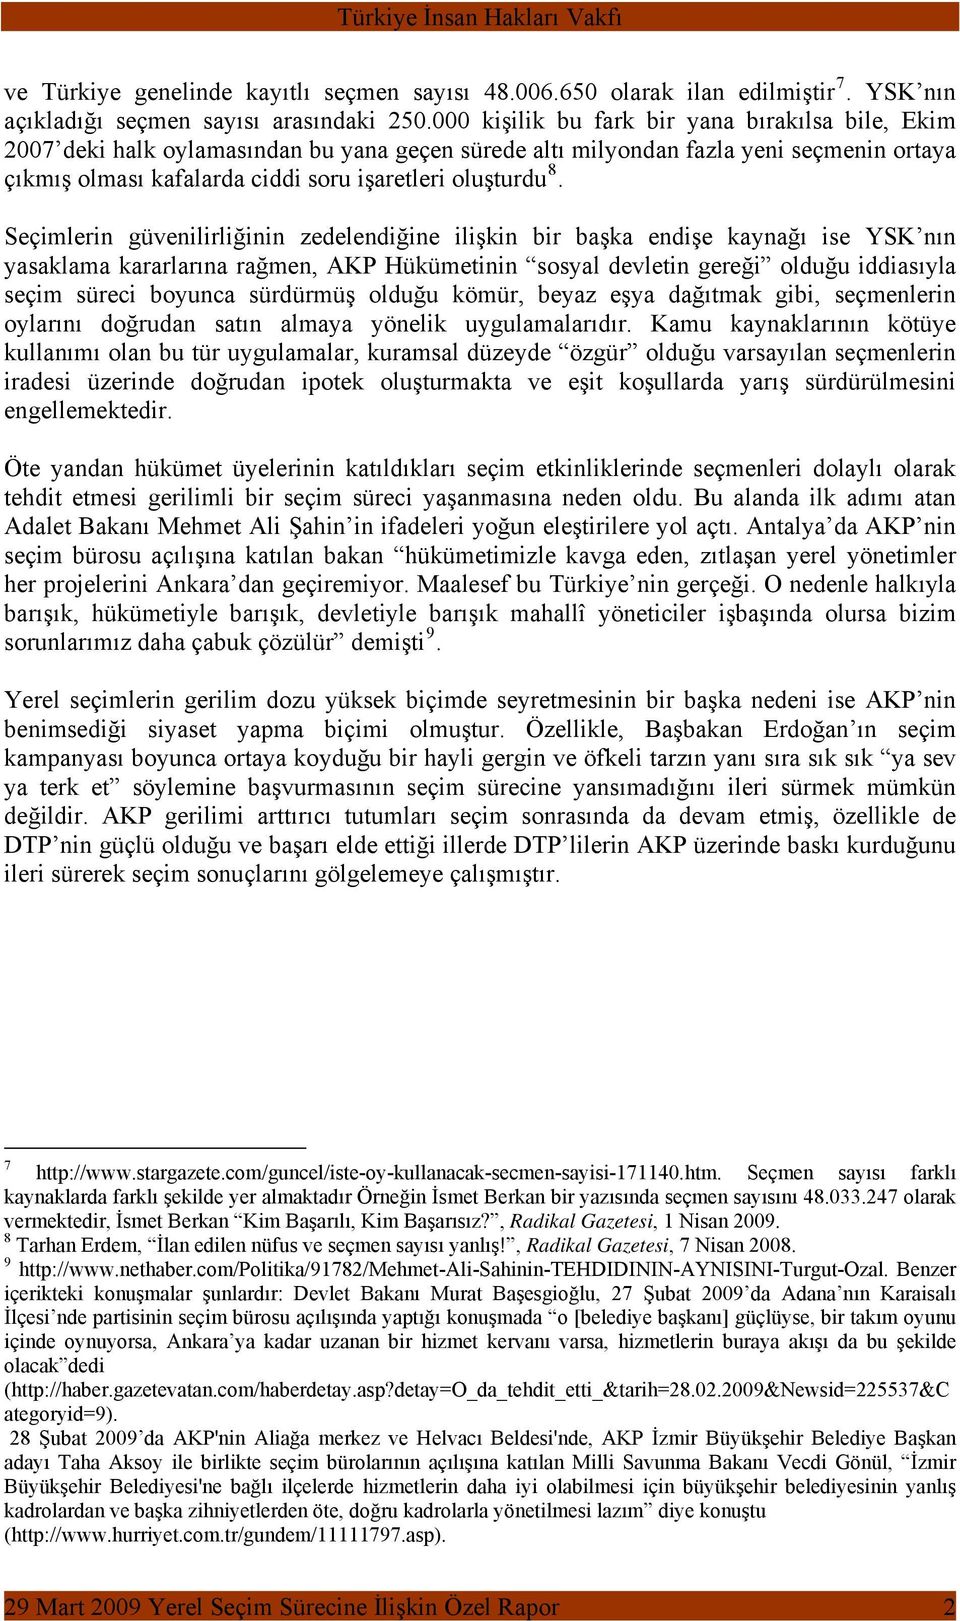 Seçimlerin güvenilirliğinin zedelendiğine ilişkin bir başka endişe kaynağı ise YSK nın yasaklama kararlarına rağmen, AKP Hükümetinin sosyal devletin gereği olduğu iddiasıyla seçim süreci boyunca